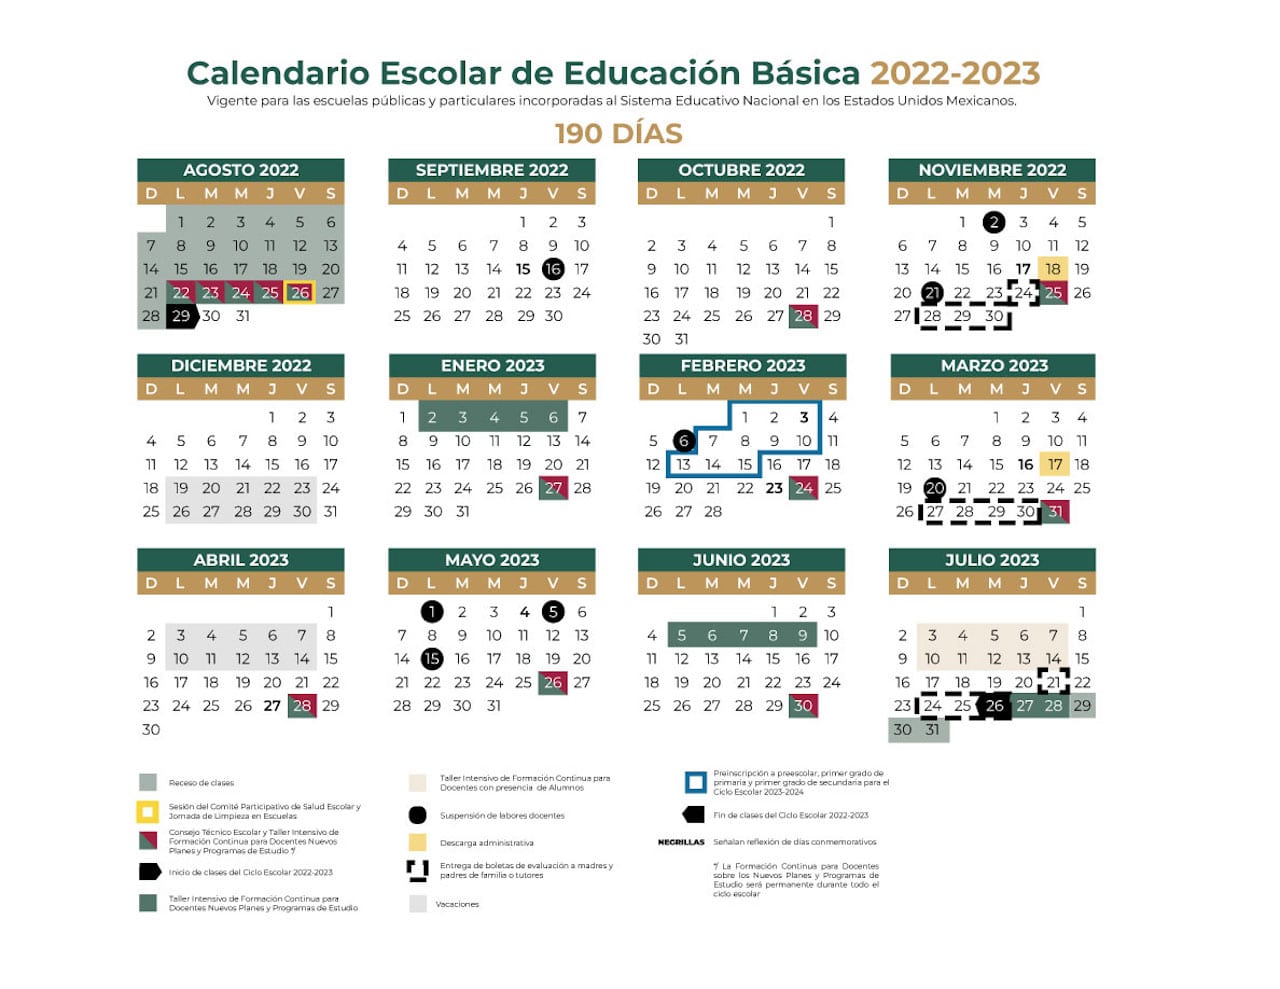 SEP: estos son los puentes del calendario escolar 2022-2023